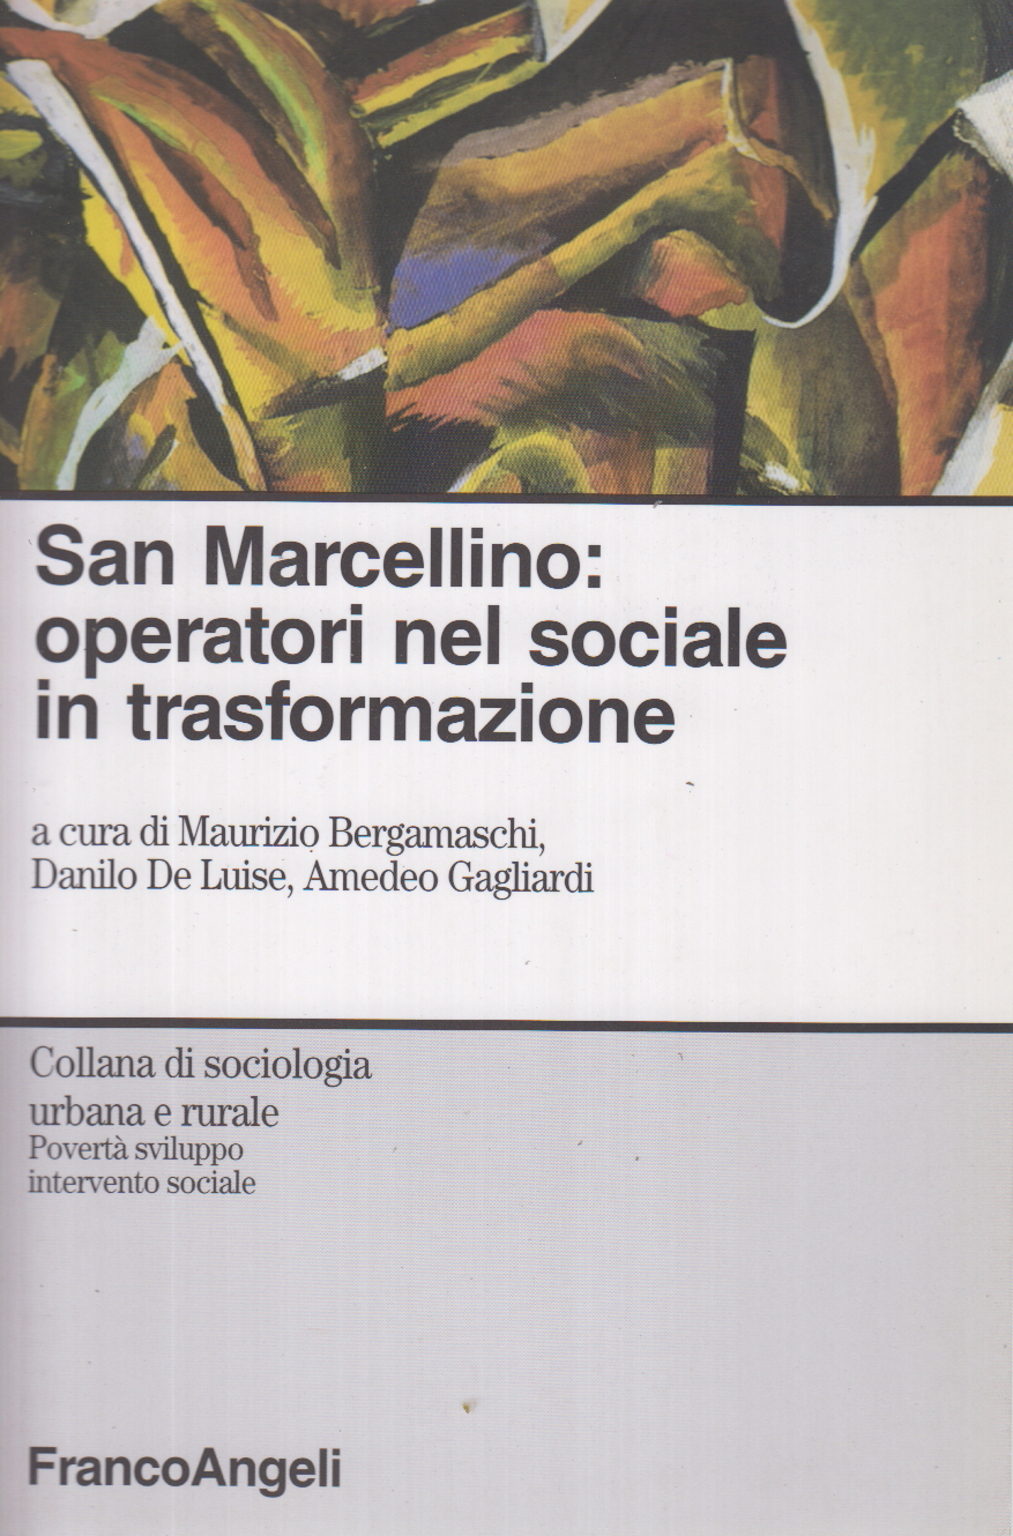 Saint Marcellin: operators in the social field in turns, Maurizio Bergamaschi Danilo De Luise Amedeo Gagliardi